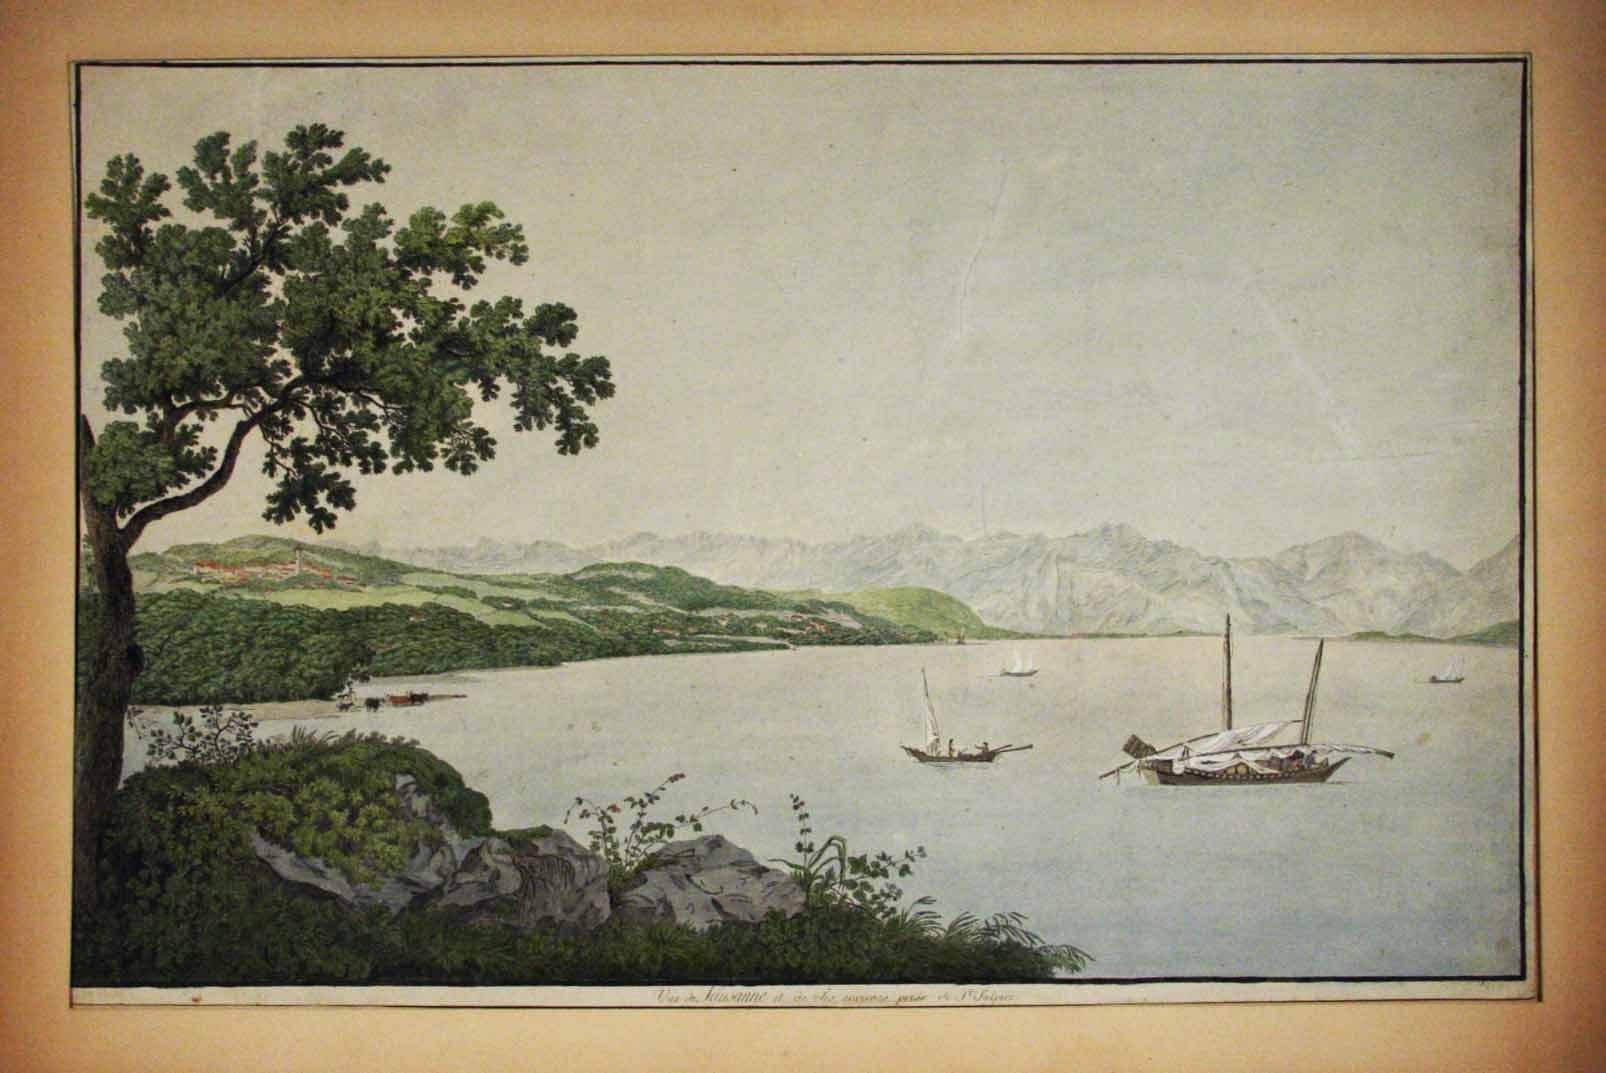 HACKERT, Carl del.: - Vue de Lausanne et de ses environs prise de St. Sulpice. (Vue sur le Lac avec bateau)